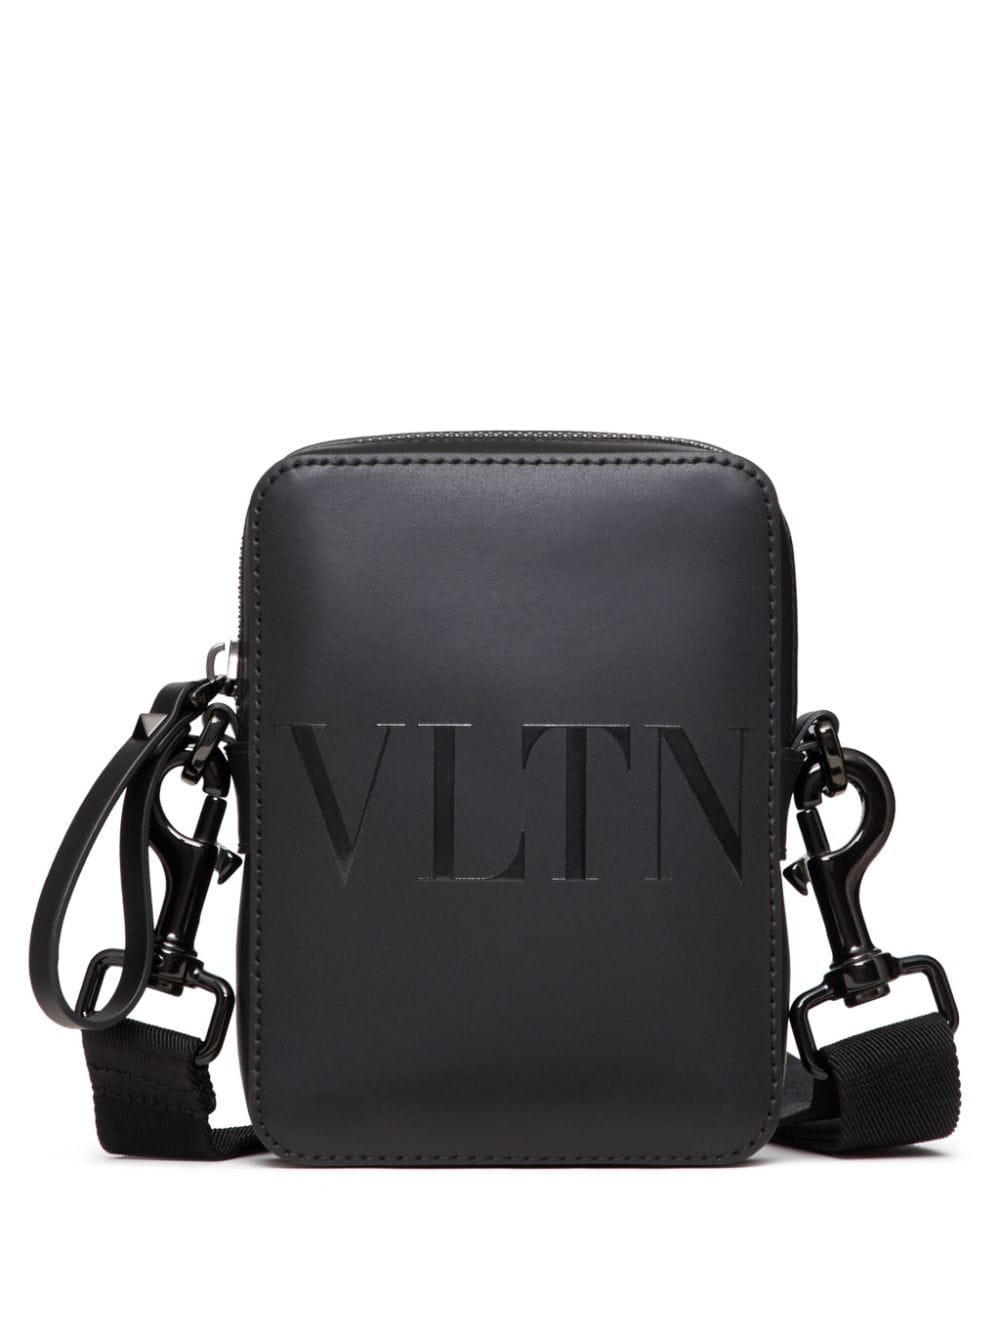 Valentino Garavani Vltn Logo Shoulder Bag In Black